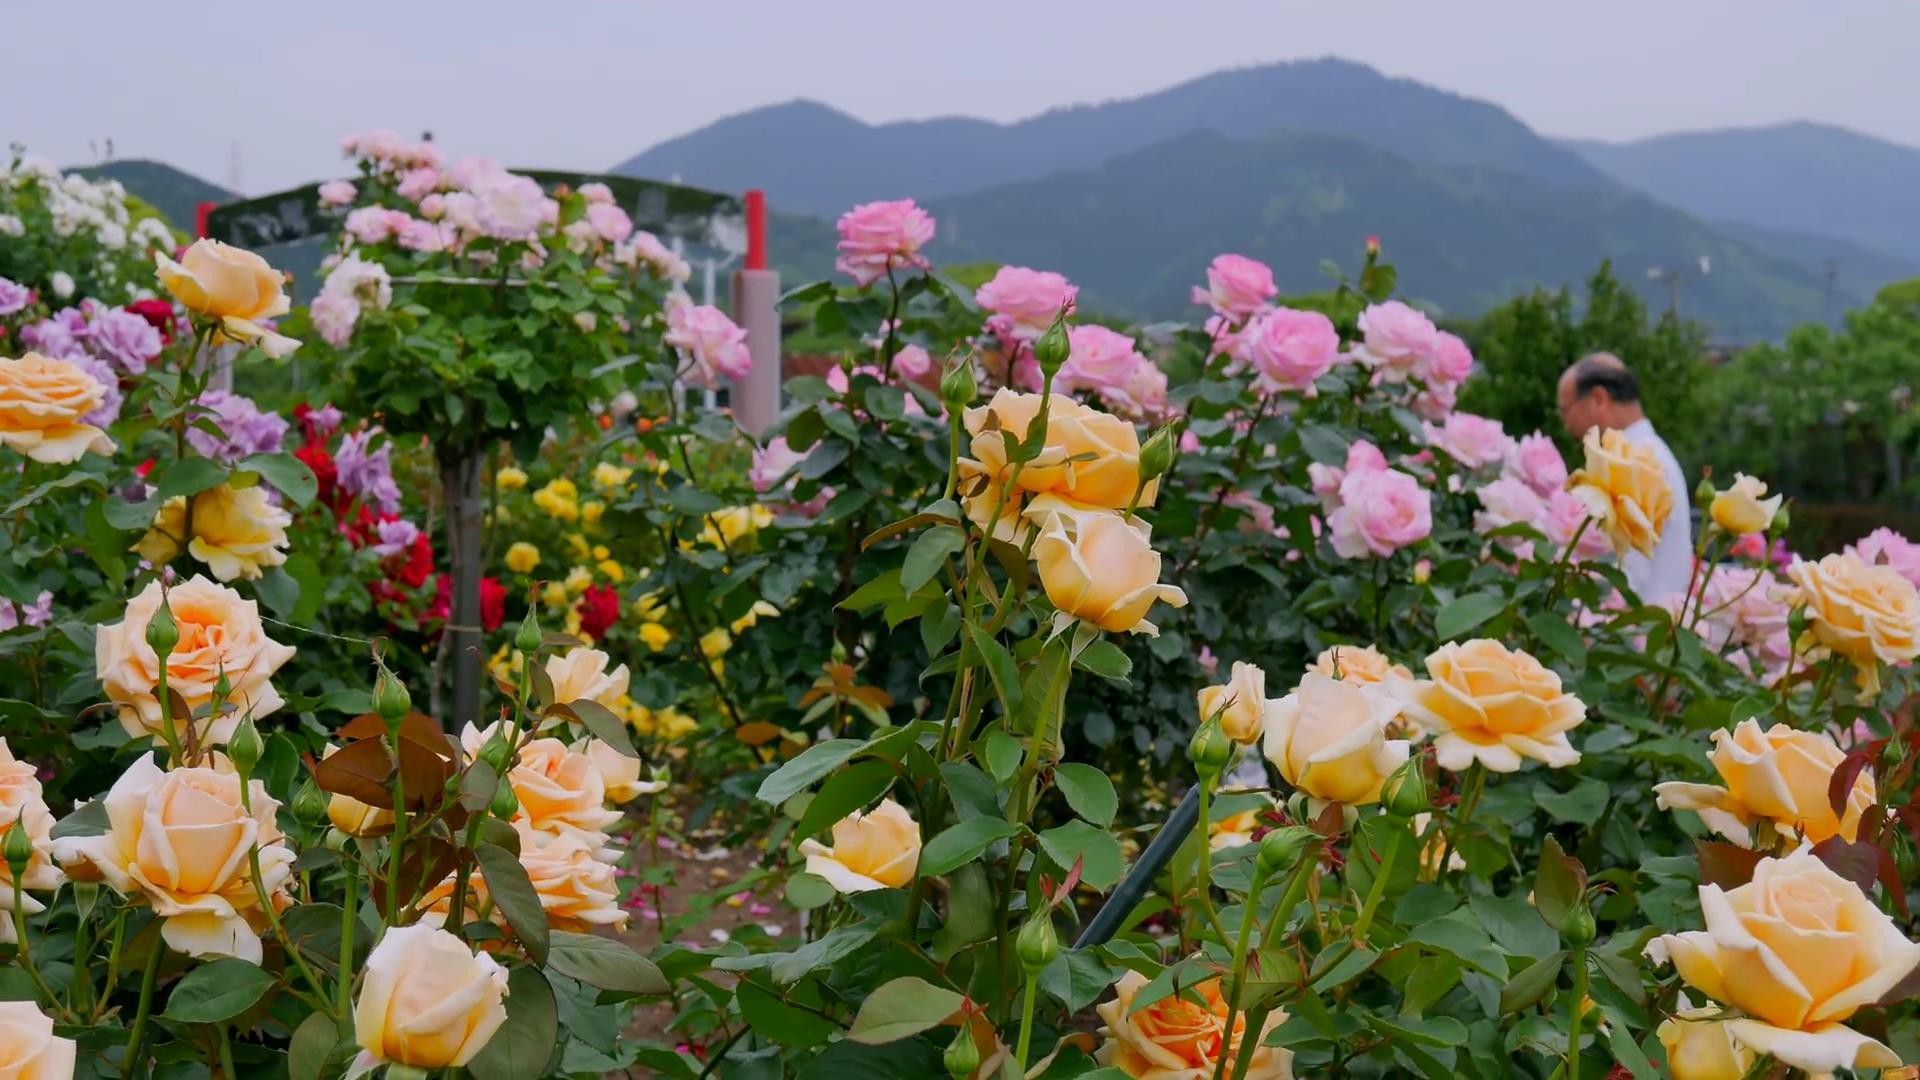 Đến thăm khu vườn trên đảo ở Nhật Bản với 2.600 cây hoa hồng rung rinh trước gió đẹp mê mẩn lòng người - Ảnh 20.